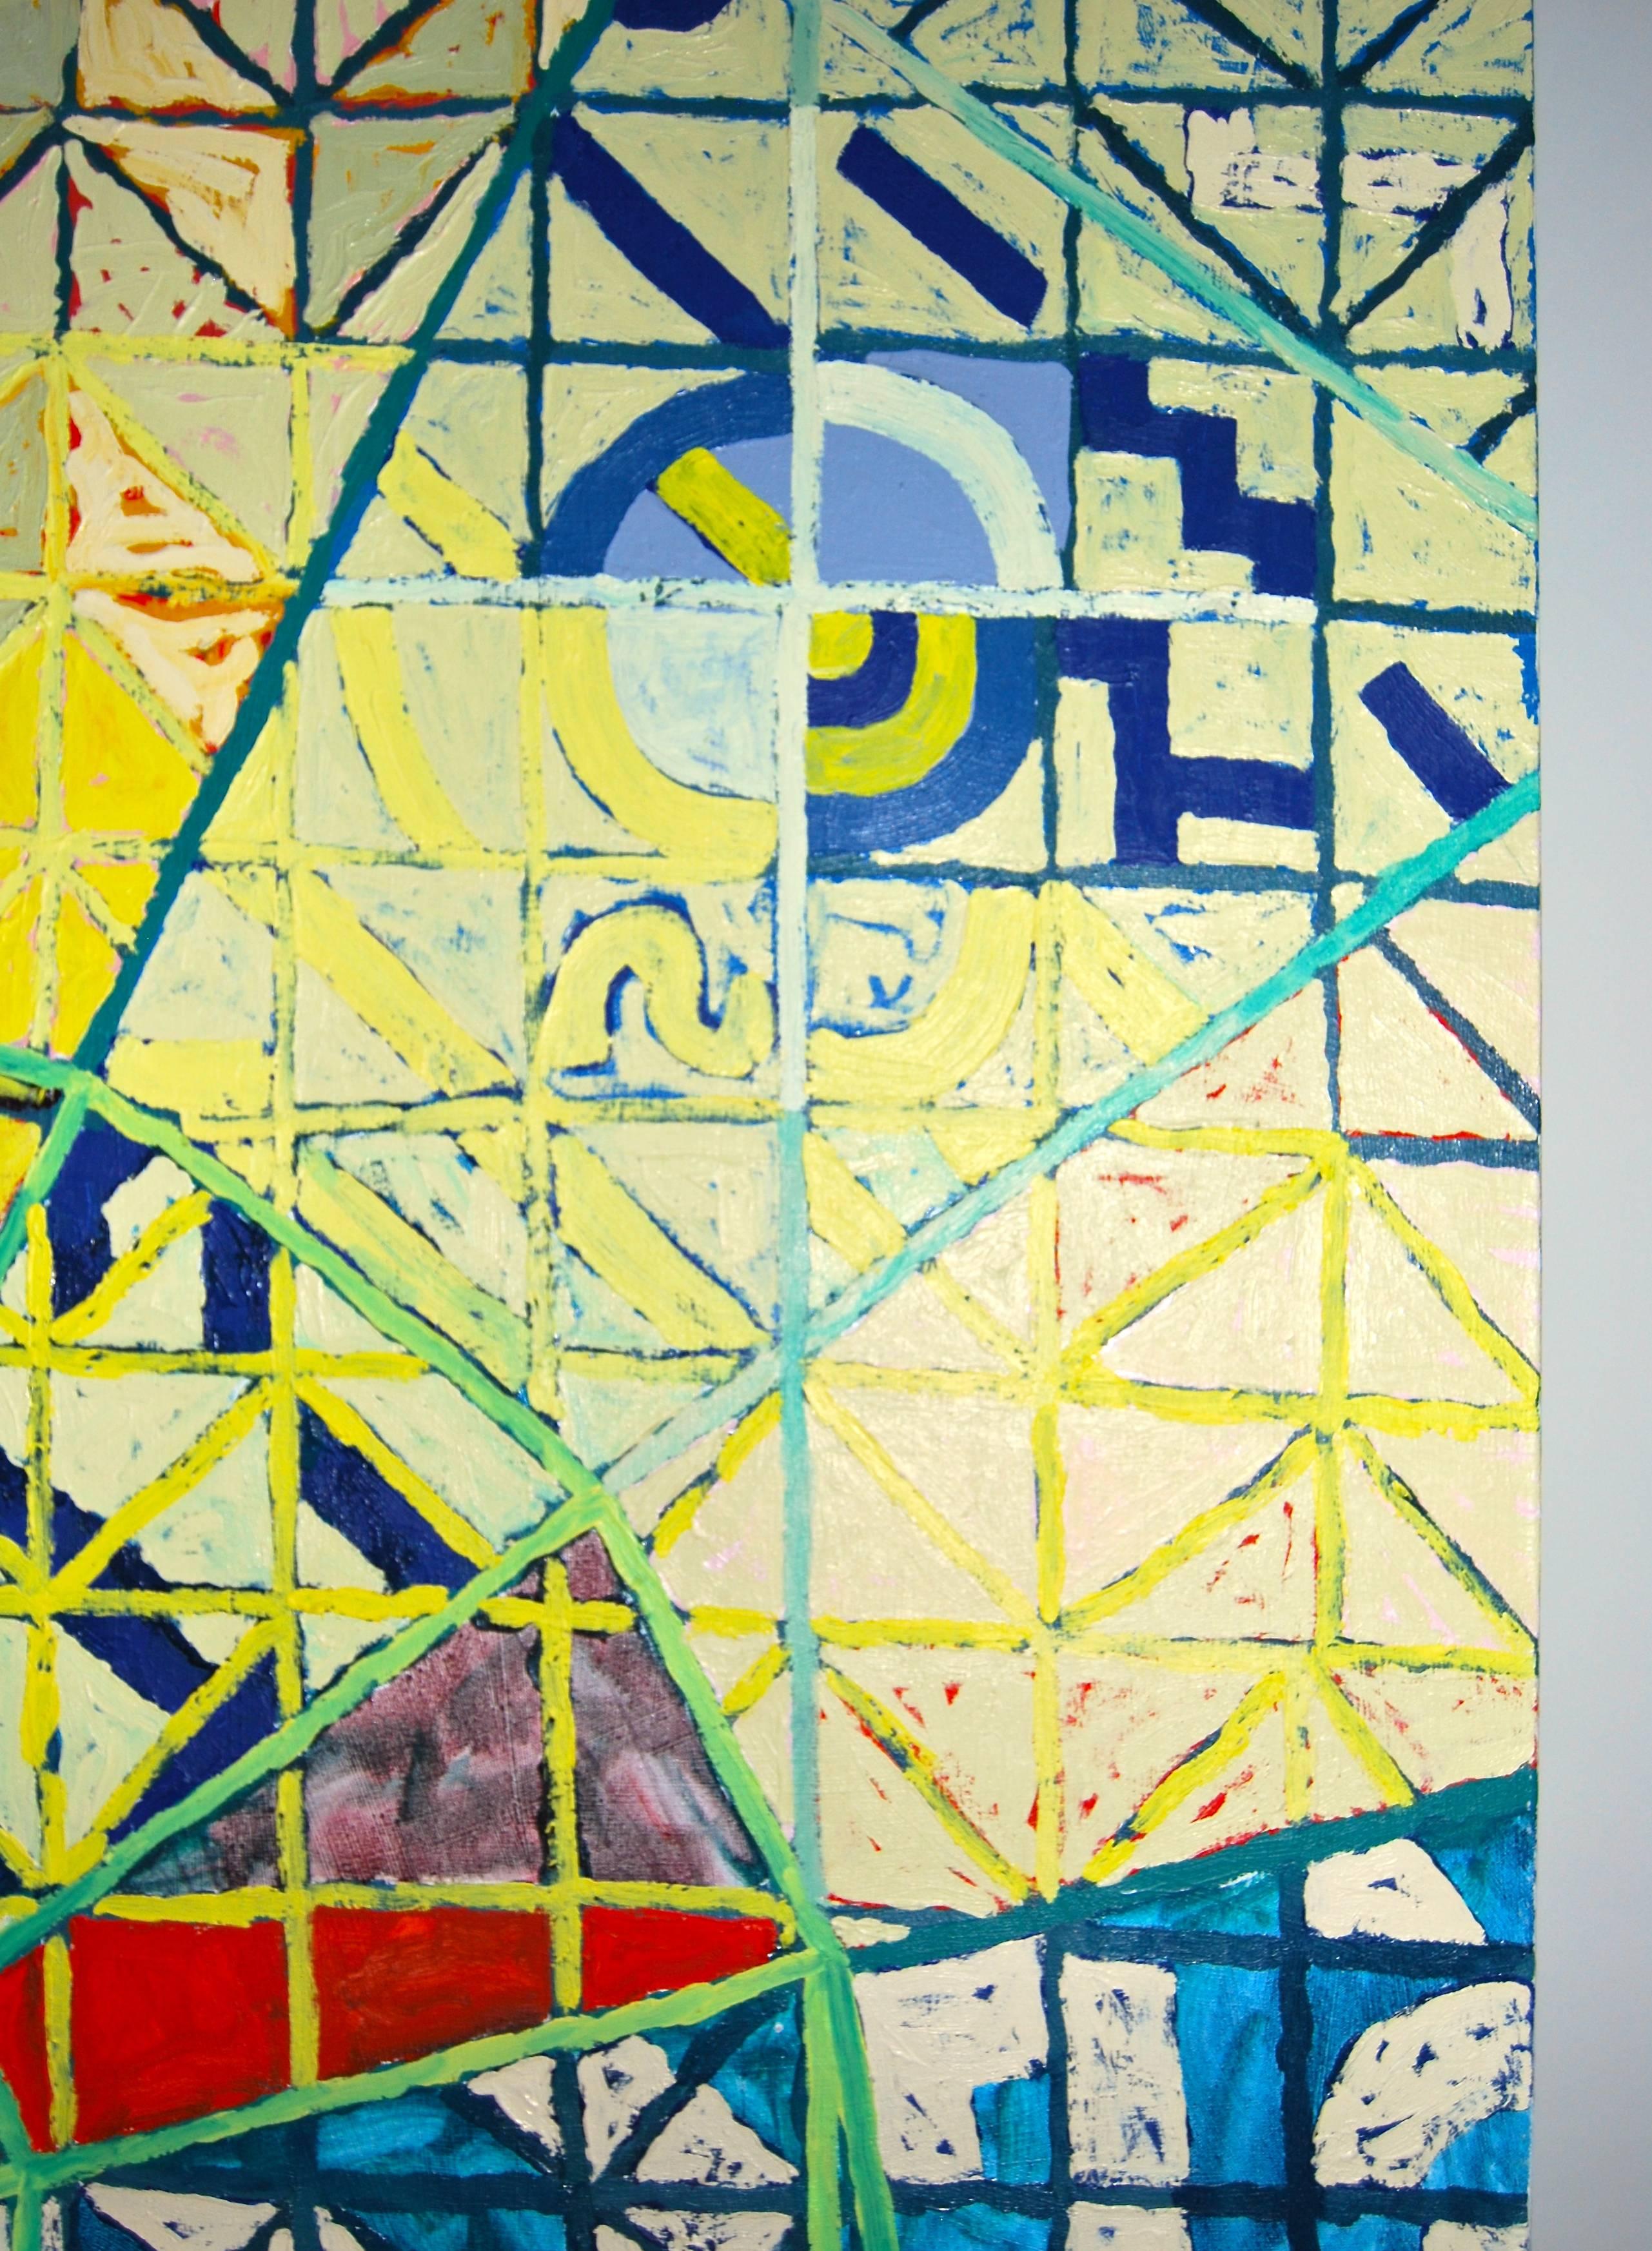 Großes, lebhaftes, abstraktes Gemälde des amerikanischen Künstlers David Brown.
Helle, kräftige Farben, voller Energie!
Das Gemälde ist in sehr gutem Zustand und auf einer Seite des Keilrahmens betitelt,
ende des 20. Jahrhunderts.